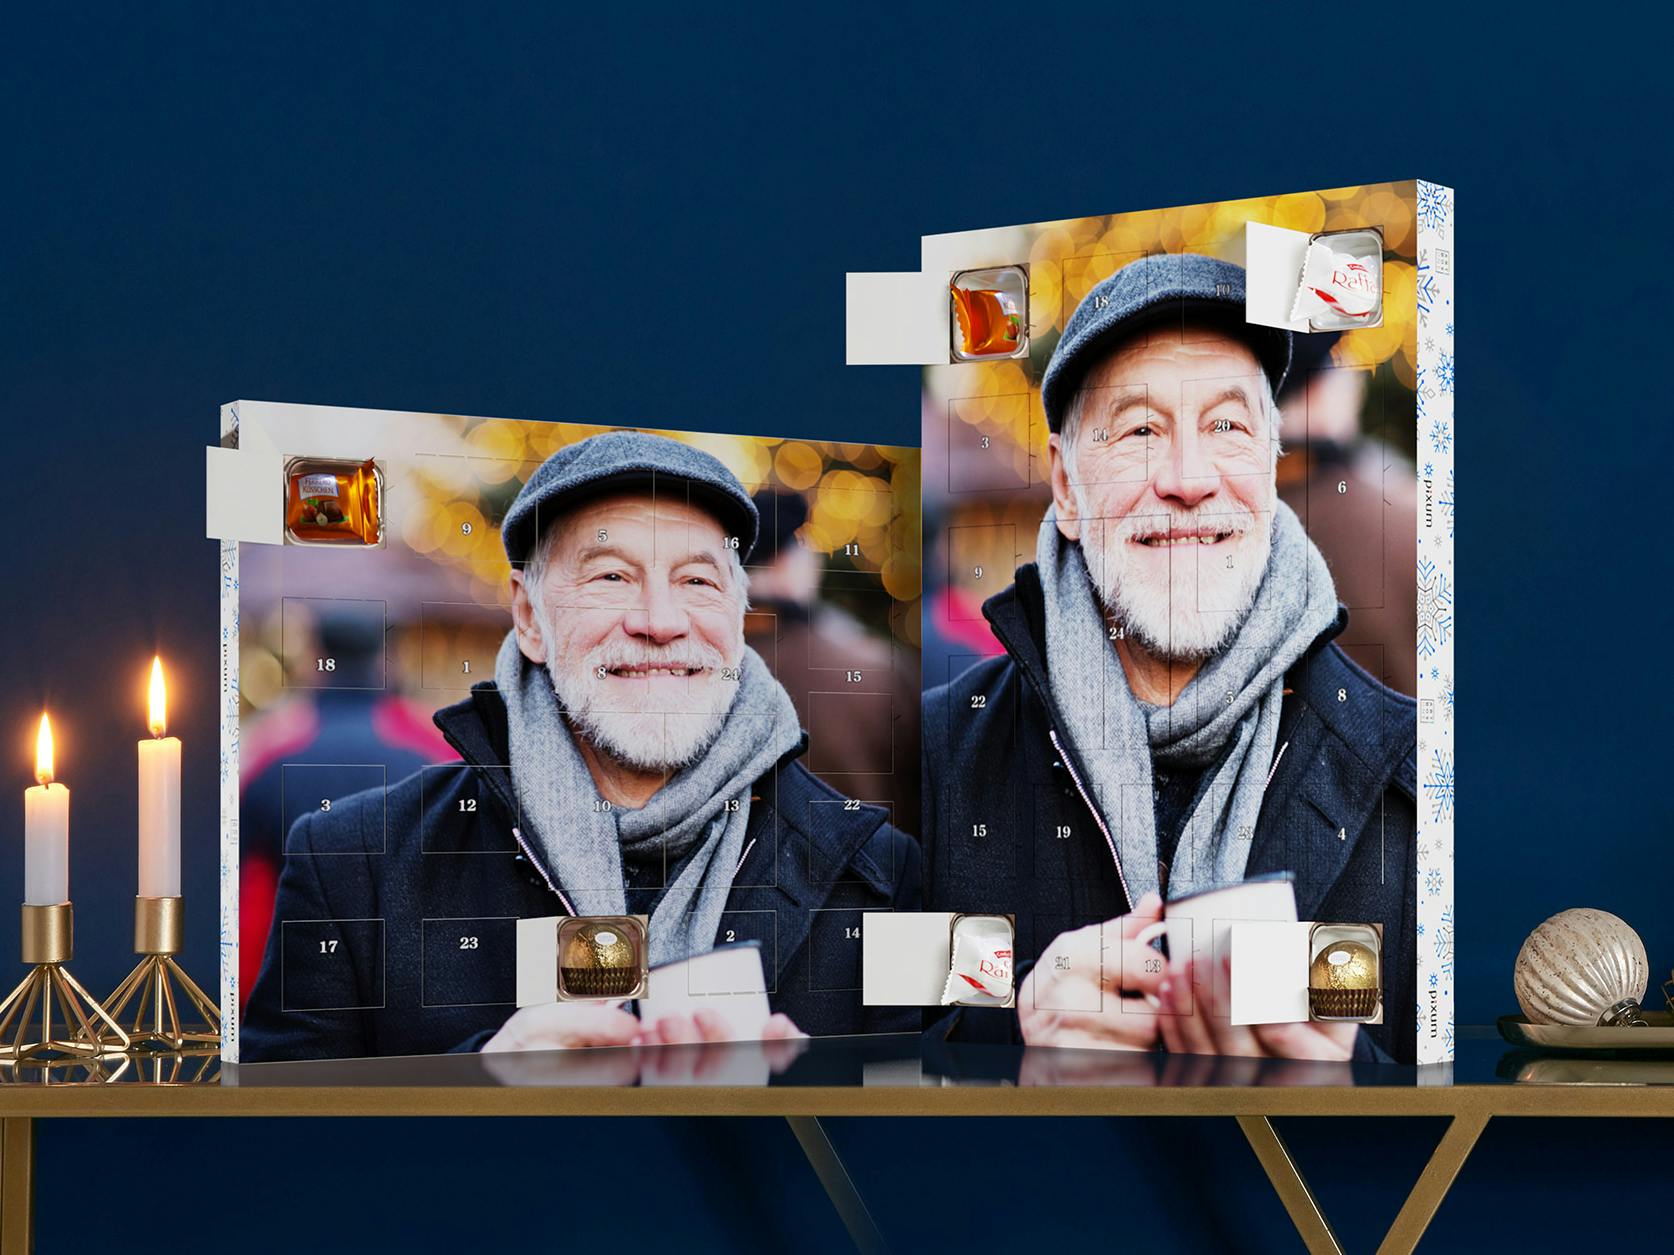 Calendario dell'Avvento personalizzato con cioccolatini Ferrero e foto di un uomo sorridente